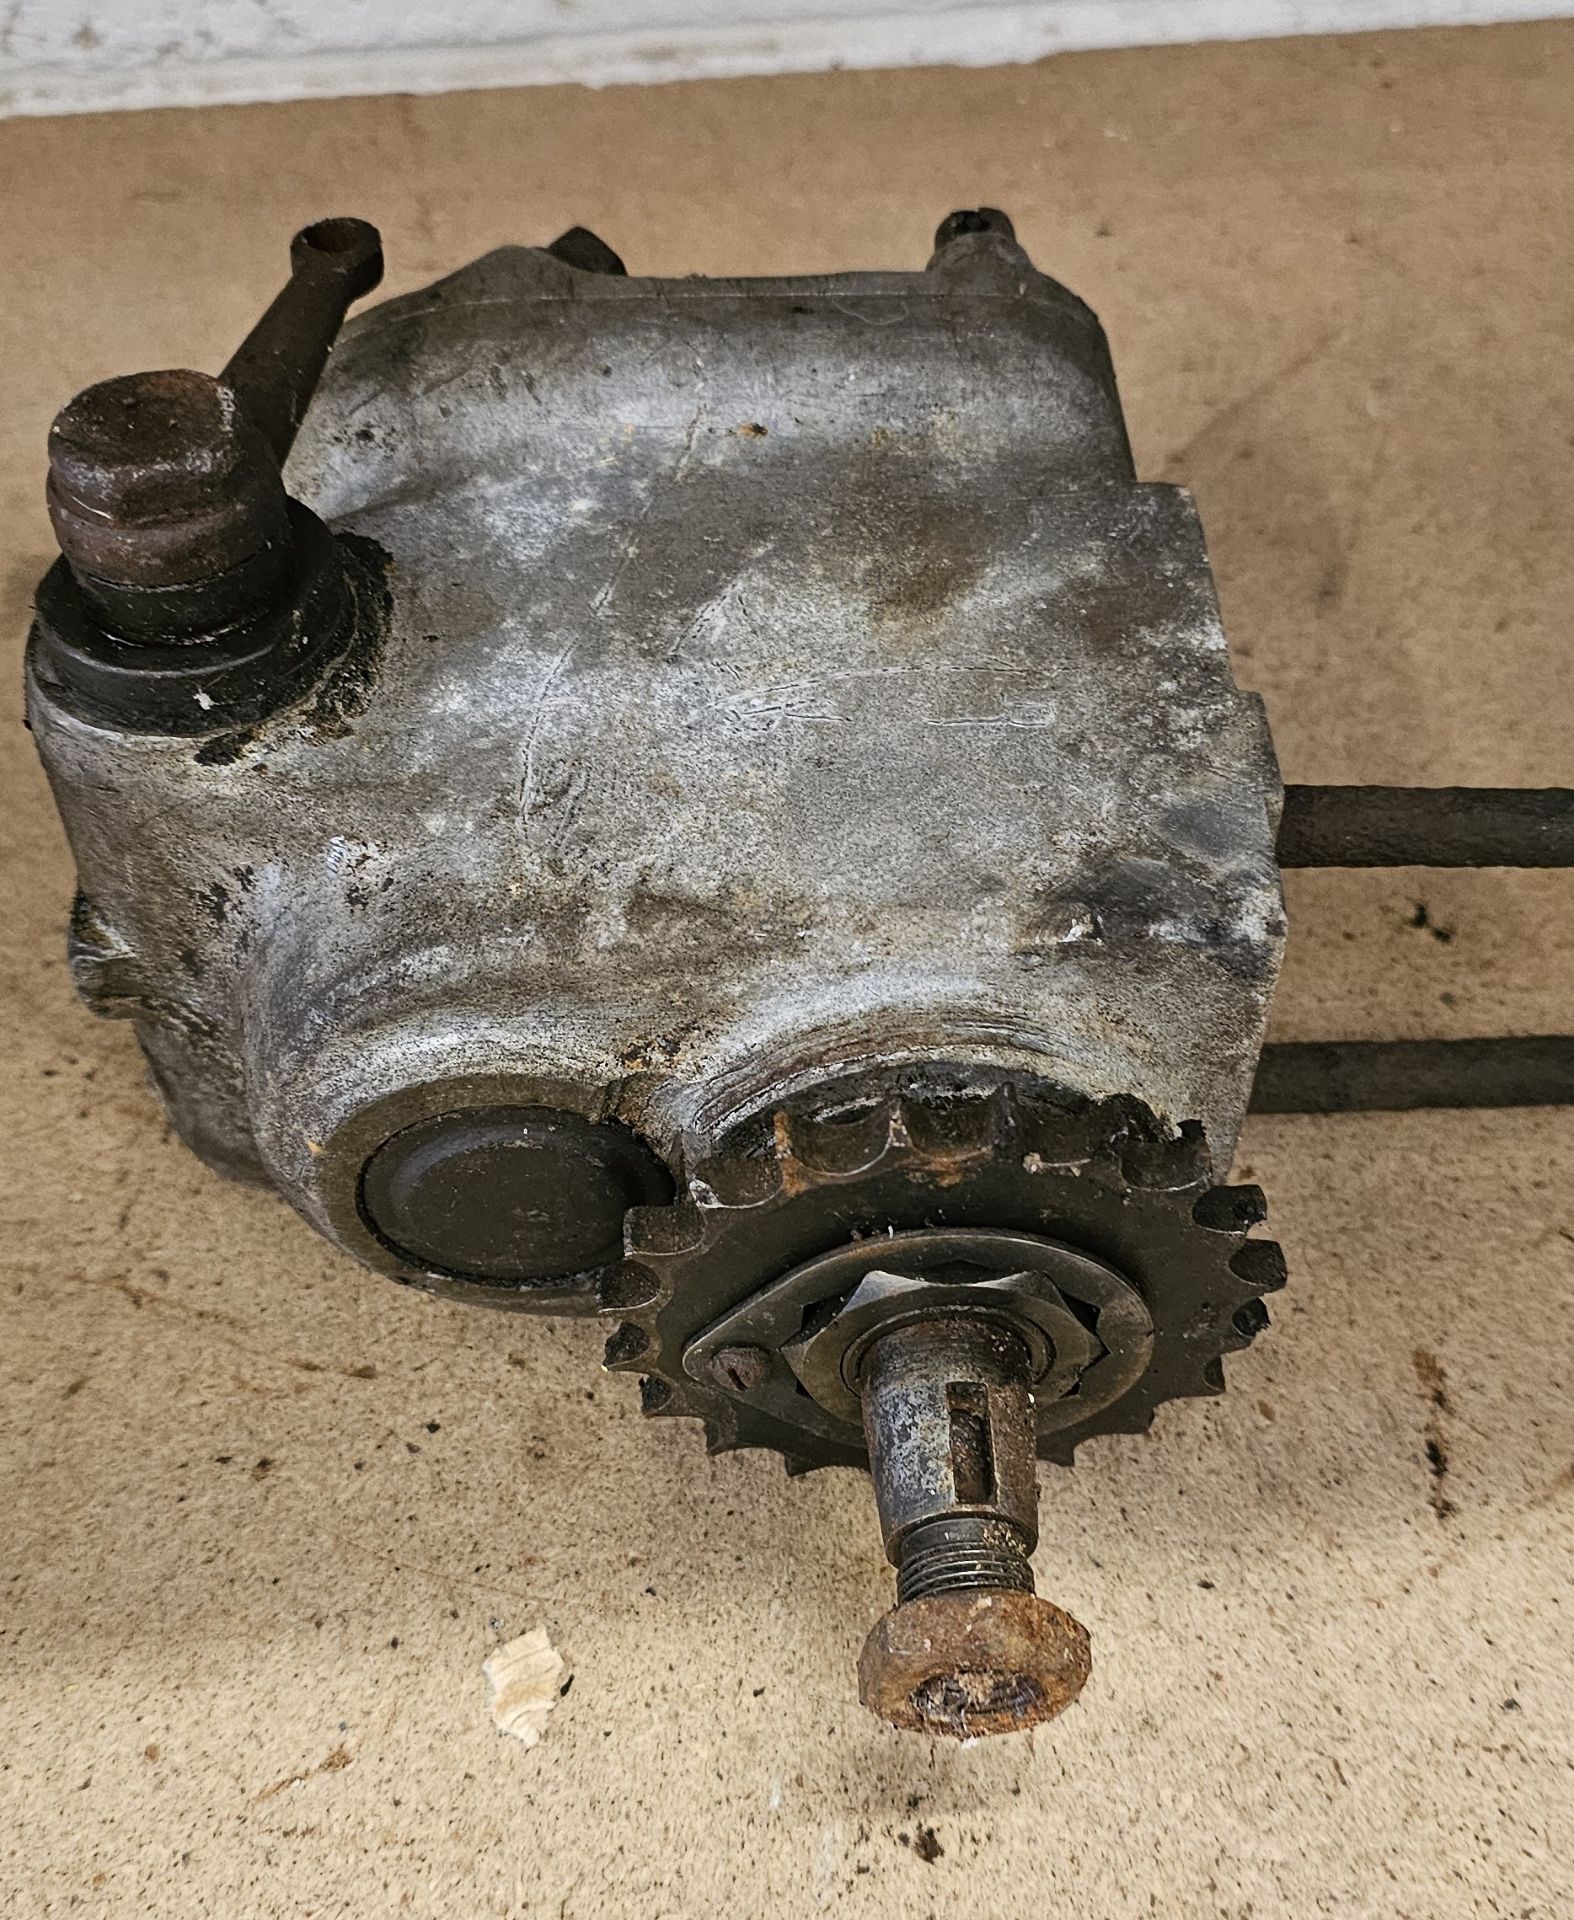 A Sturmey Archer gearbox, LW 12537